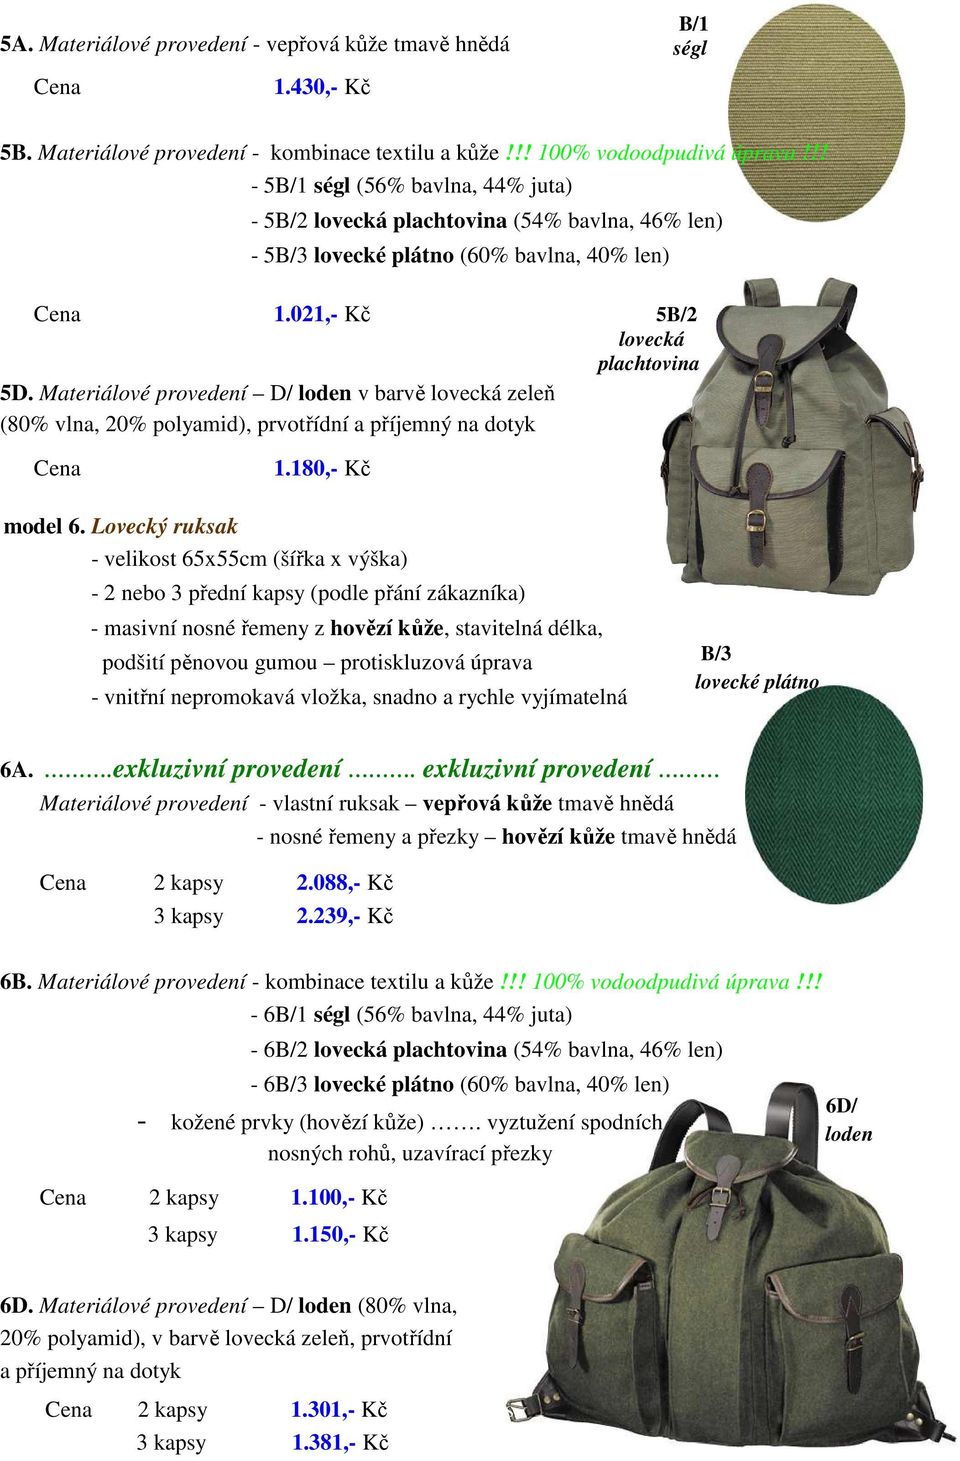 Materiálové provedení D/ v barvě lovecká zeleň 5B/2 lovecká plachtovina 1.180,- Kč bez DPH/kus model 6.